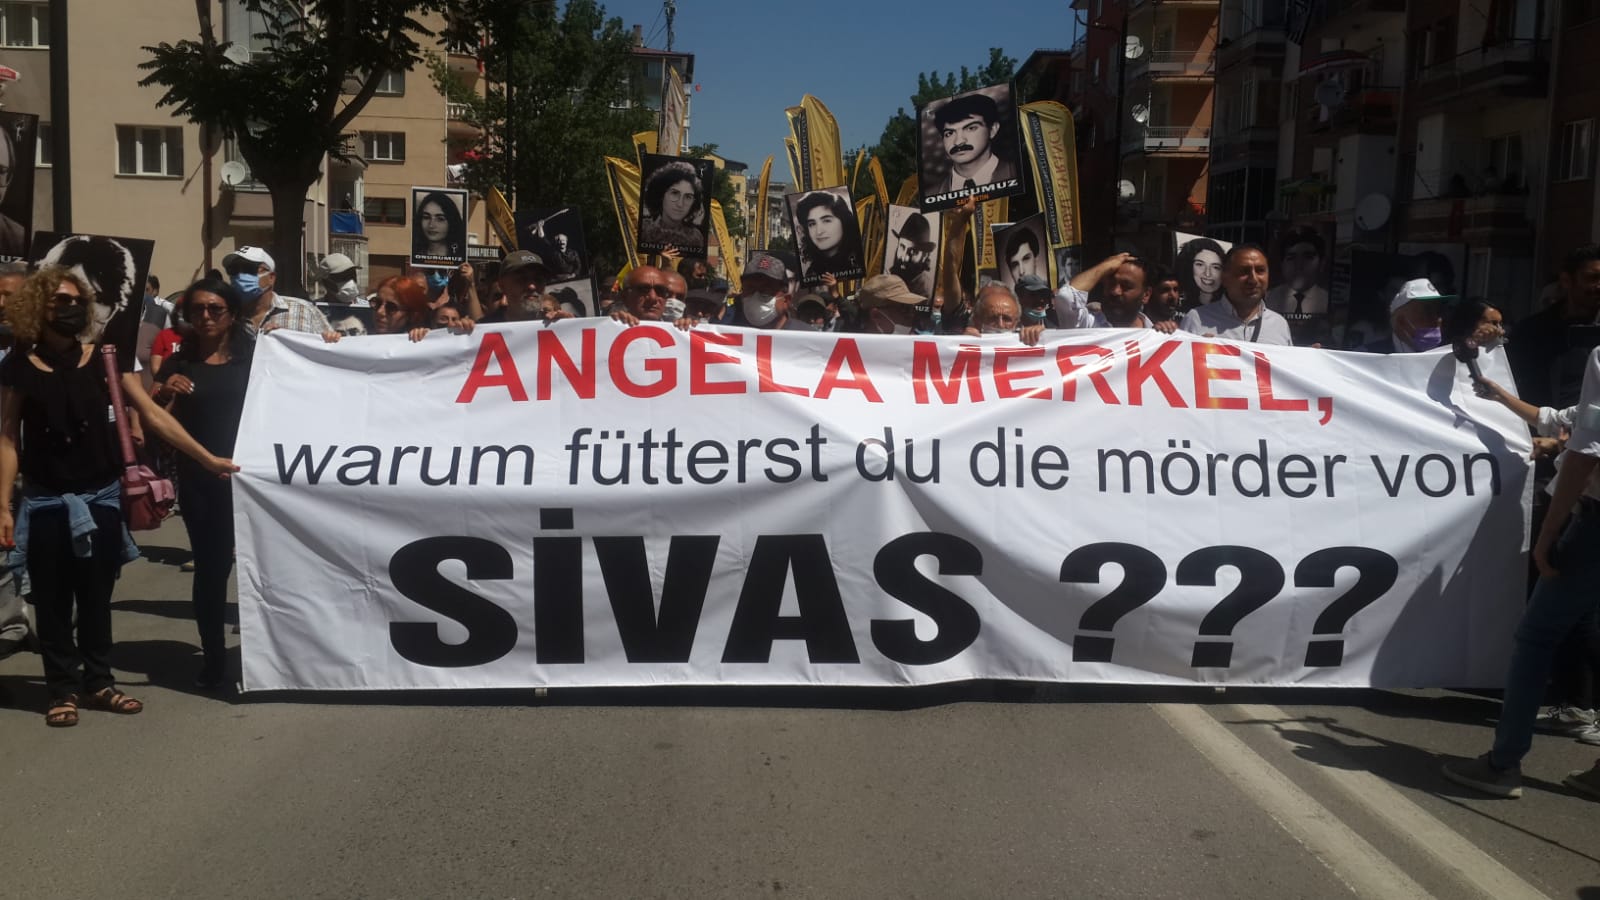 Sivas’tan Angela Merkel’e mesaj